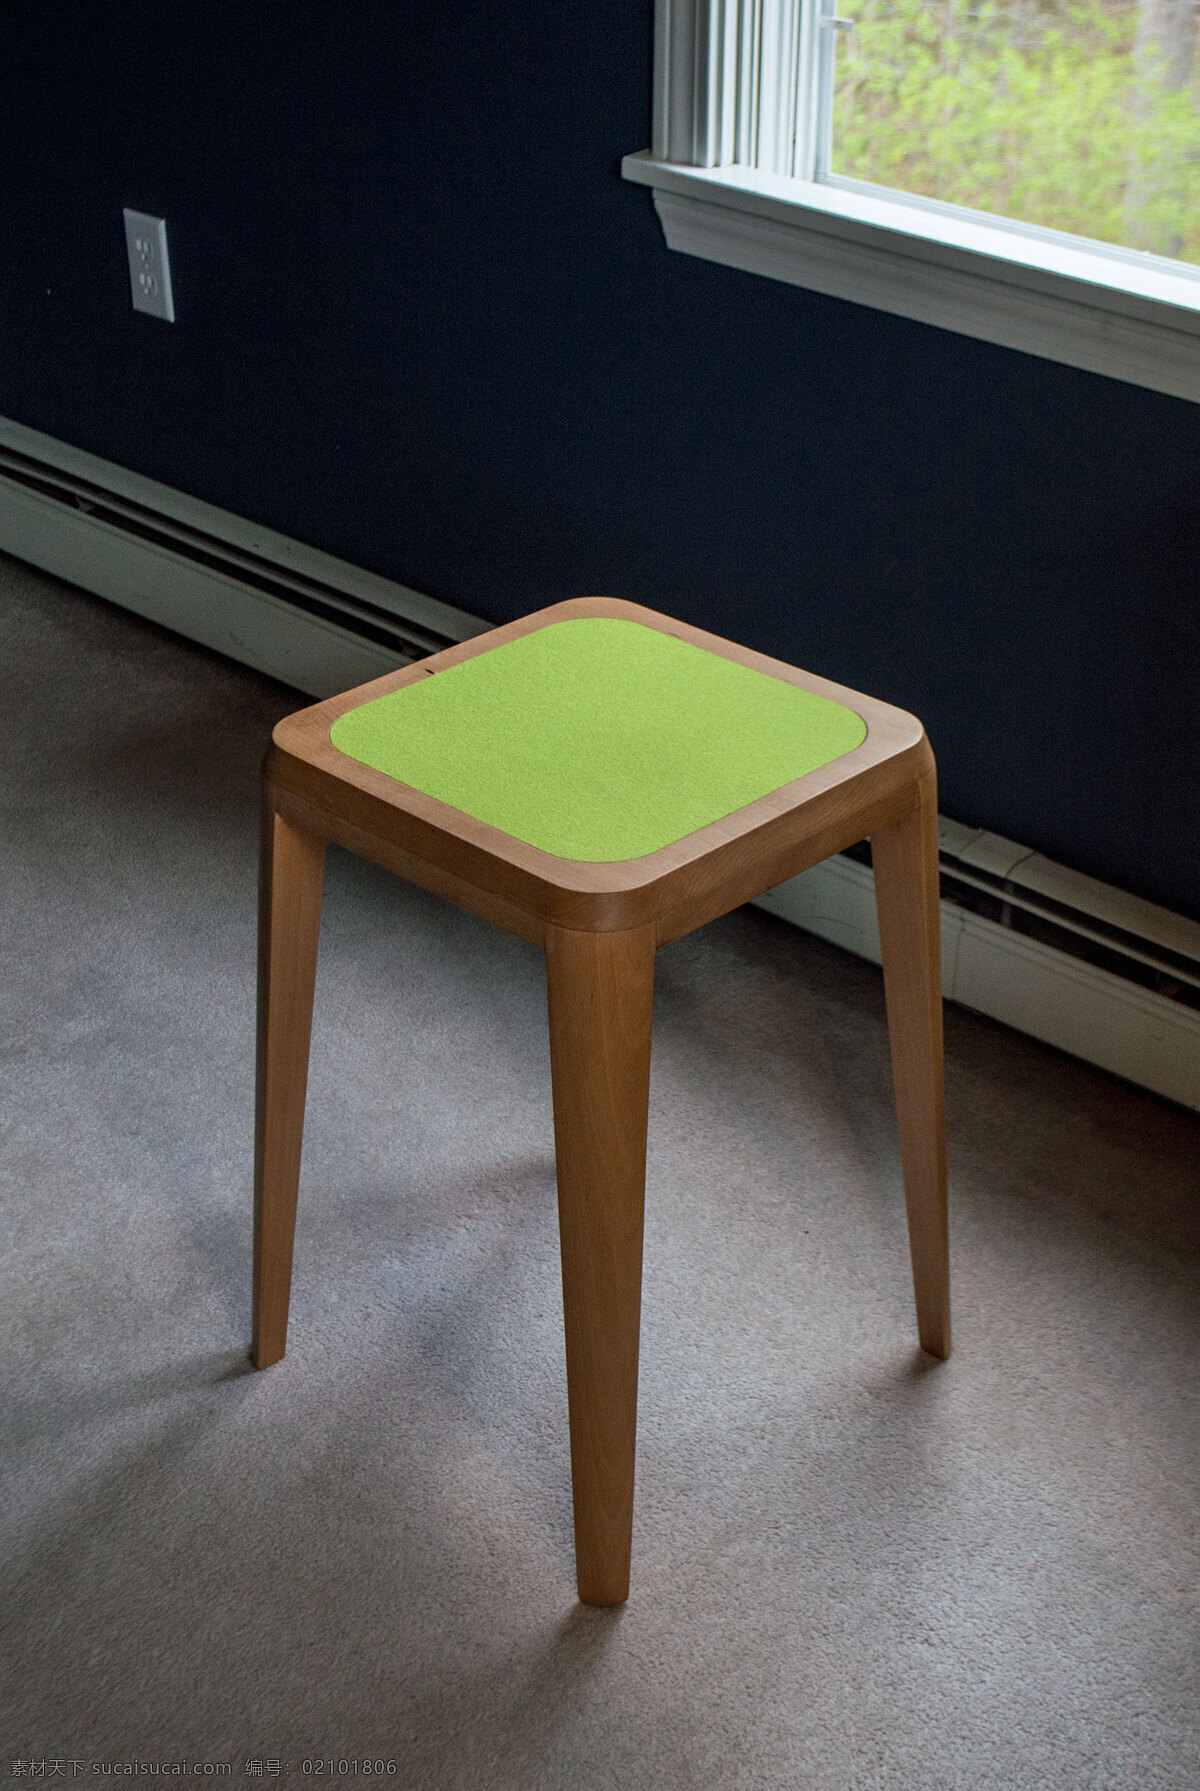 办公室 专用 小 清新 凳子 餐桌 产品设计 概念 木质 椅子